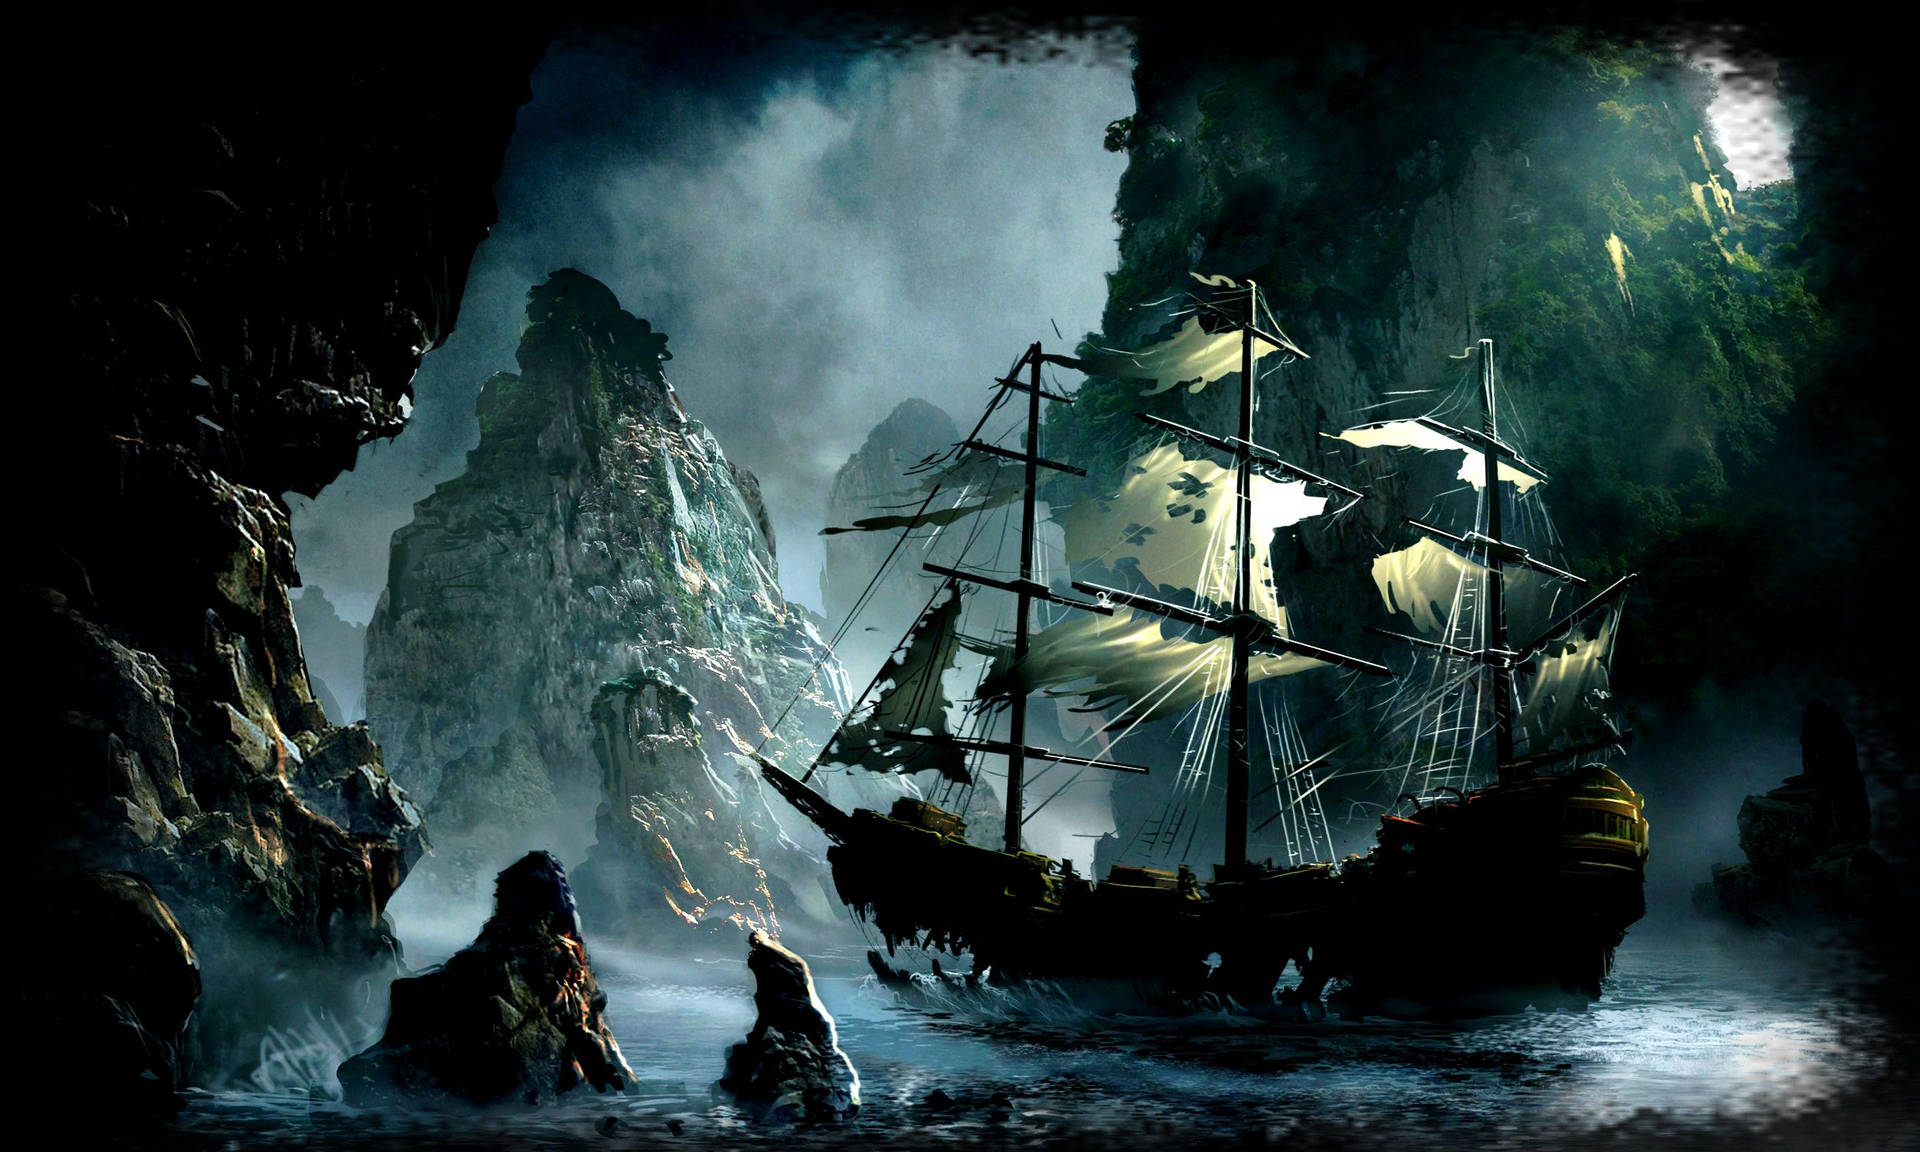 Pirate Ship In Island